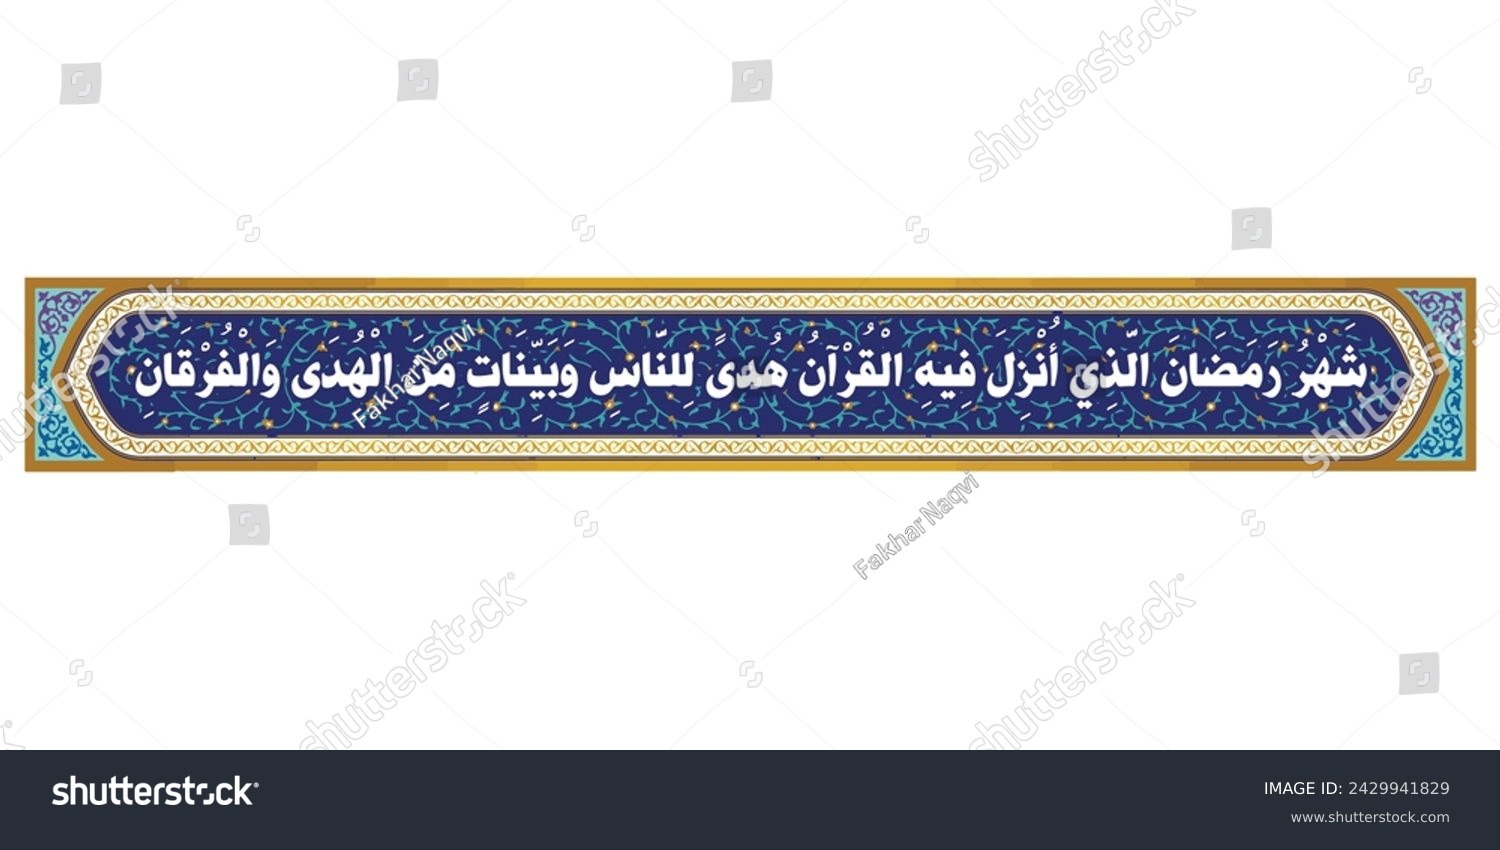 SVG of Ramadan ayat calligraphy design shahru ramadan allazi surah baqarah ayat 185 Ramadan mubarak. Translation: 